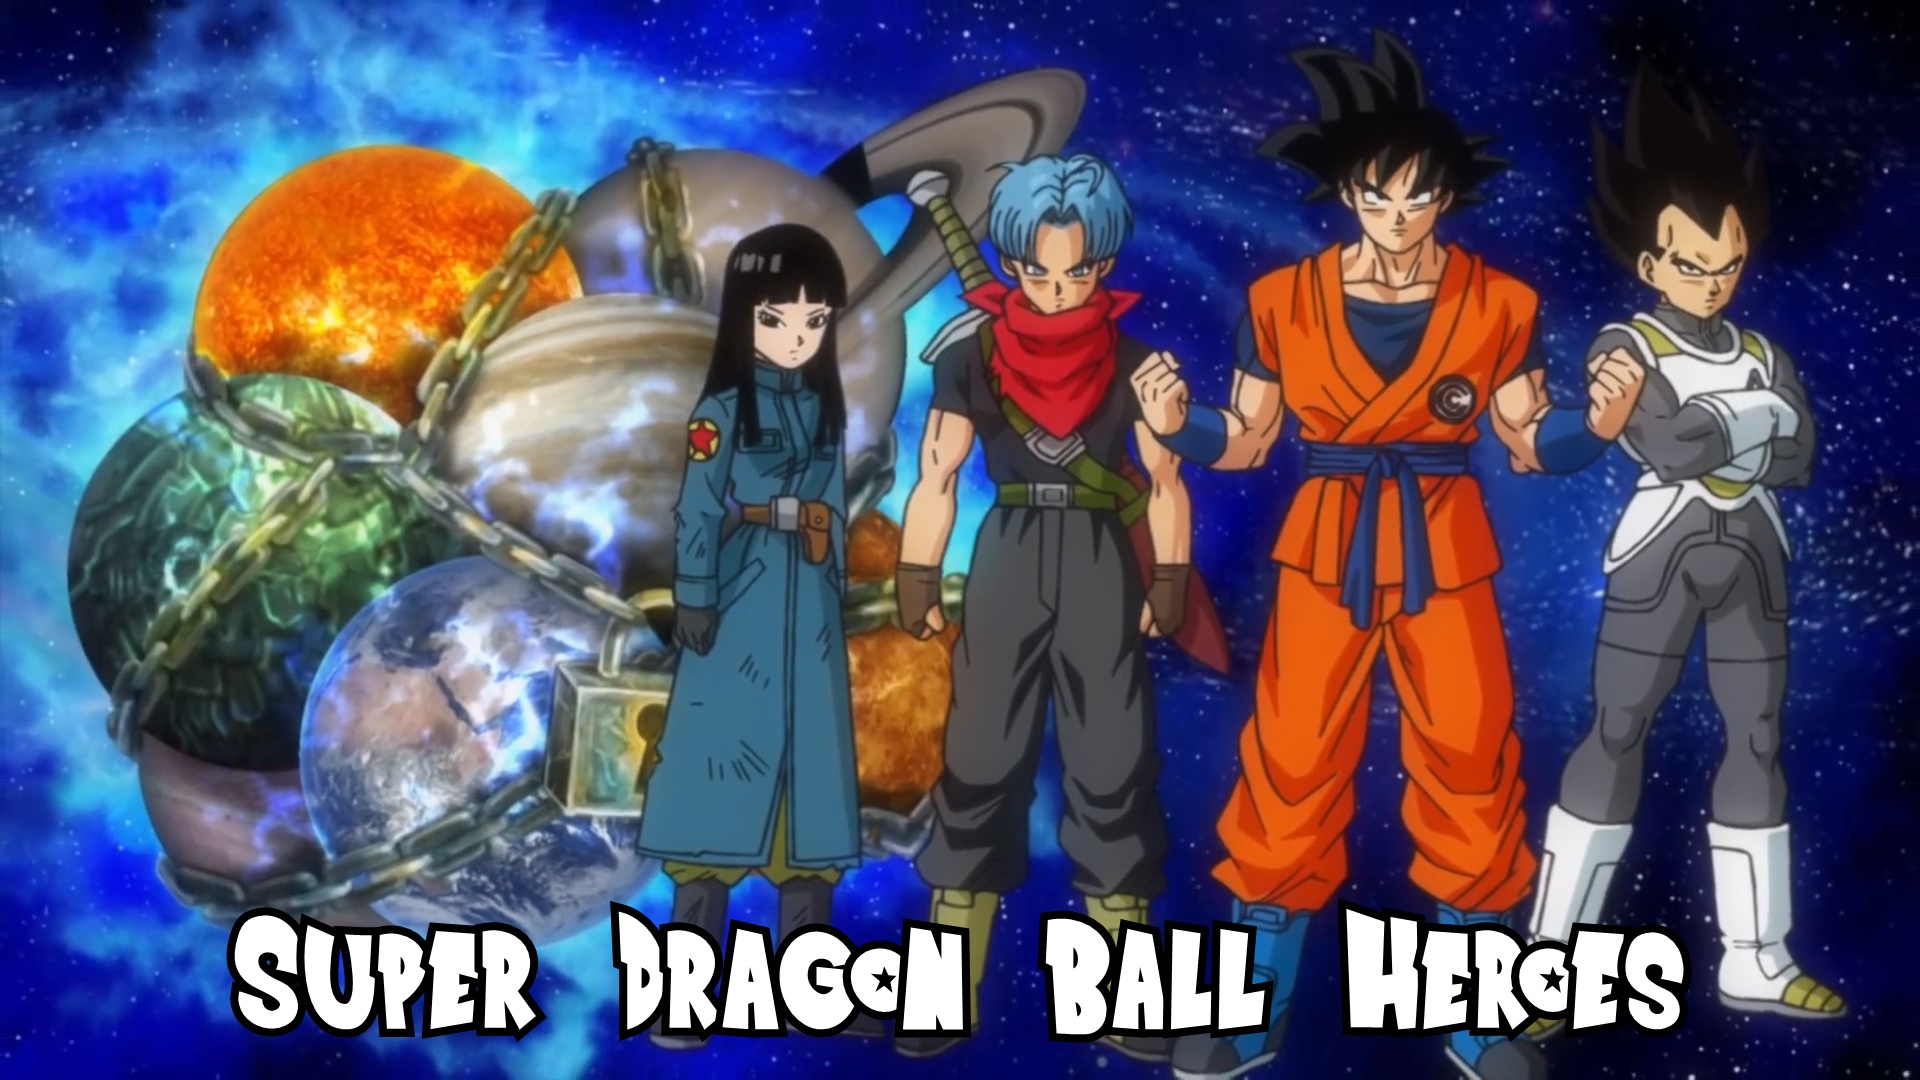 Trunks del Futuro  Anime dragon ball super, Dragon ball wallpapers, Anime  dragon ball